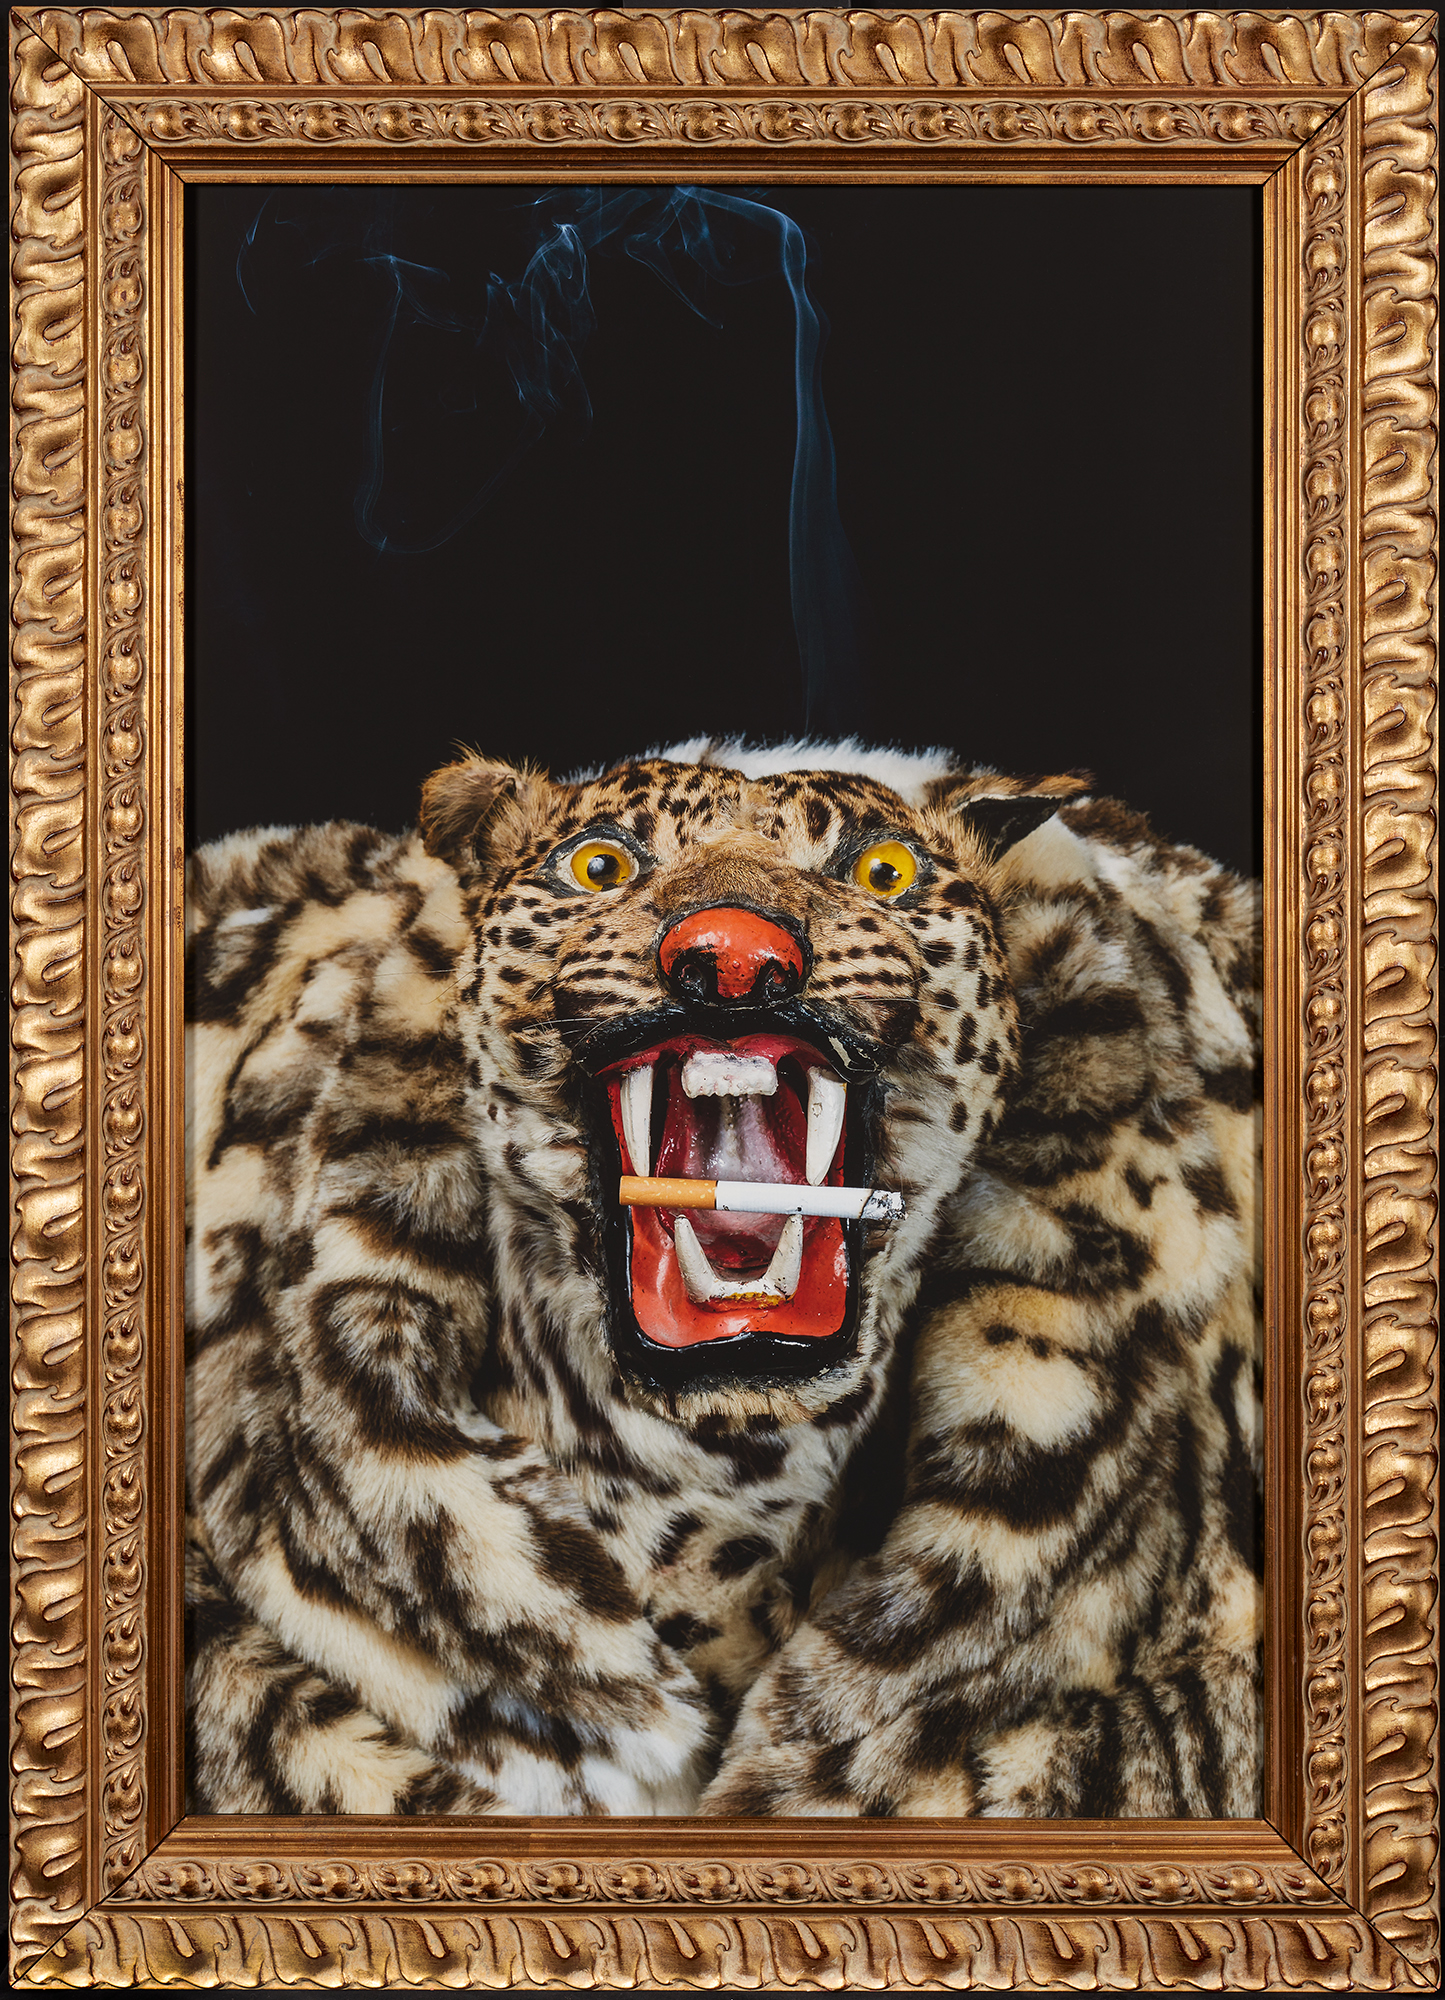 Absurdissa asetelmaskuvassa on kuvattuna suoraan edestä leopardintalja, jonka tekohampaiden välissä on tupakka. Kuvassa on koristeelliset kultaiset kehykset.